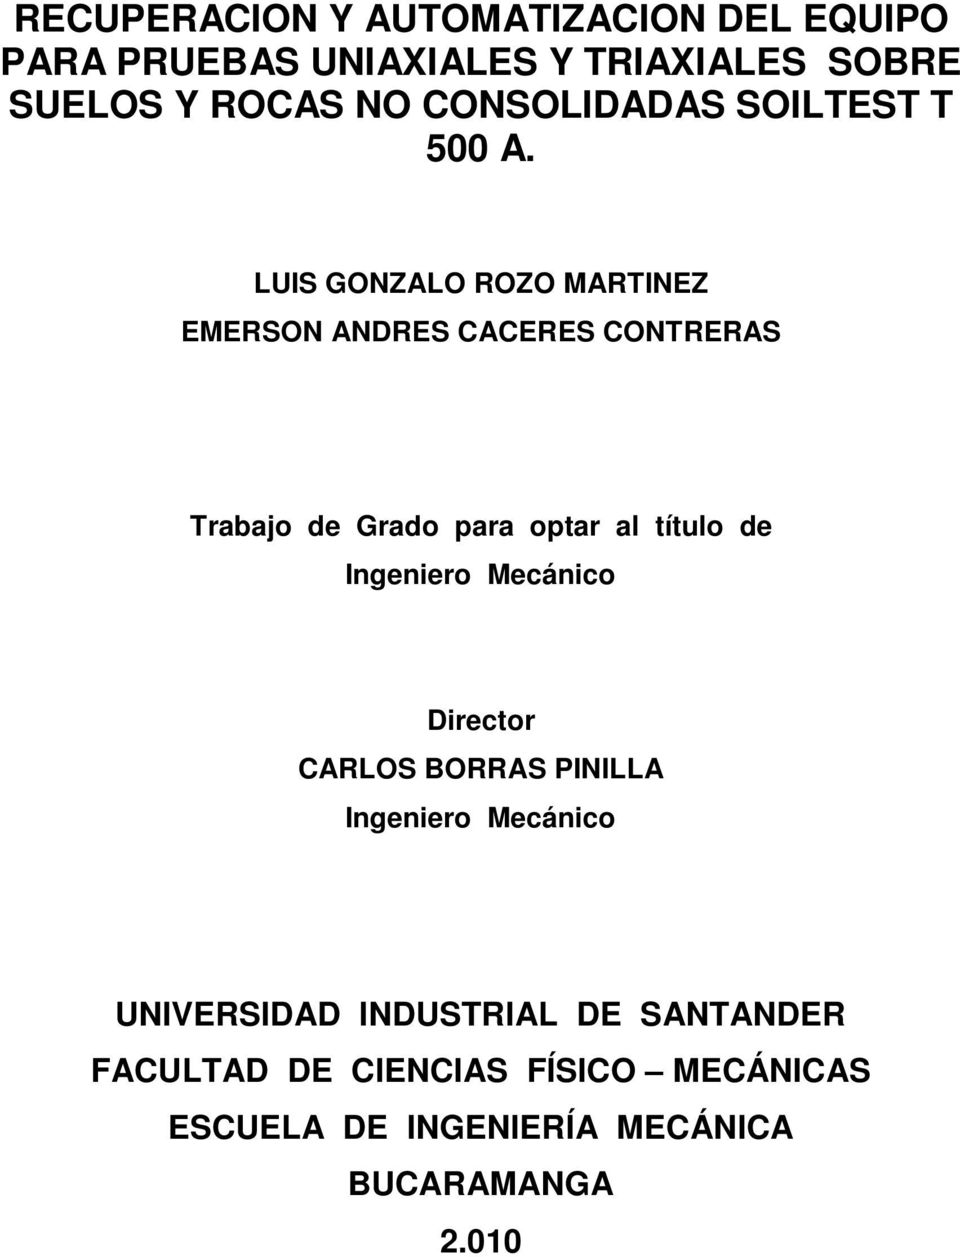 LUIS GONZALO ROZO MARTINEZ EMERSON ANDRES CACERES CONTRERAS Trabajo de Grado para optar al título de